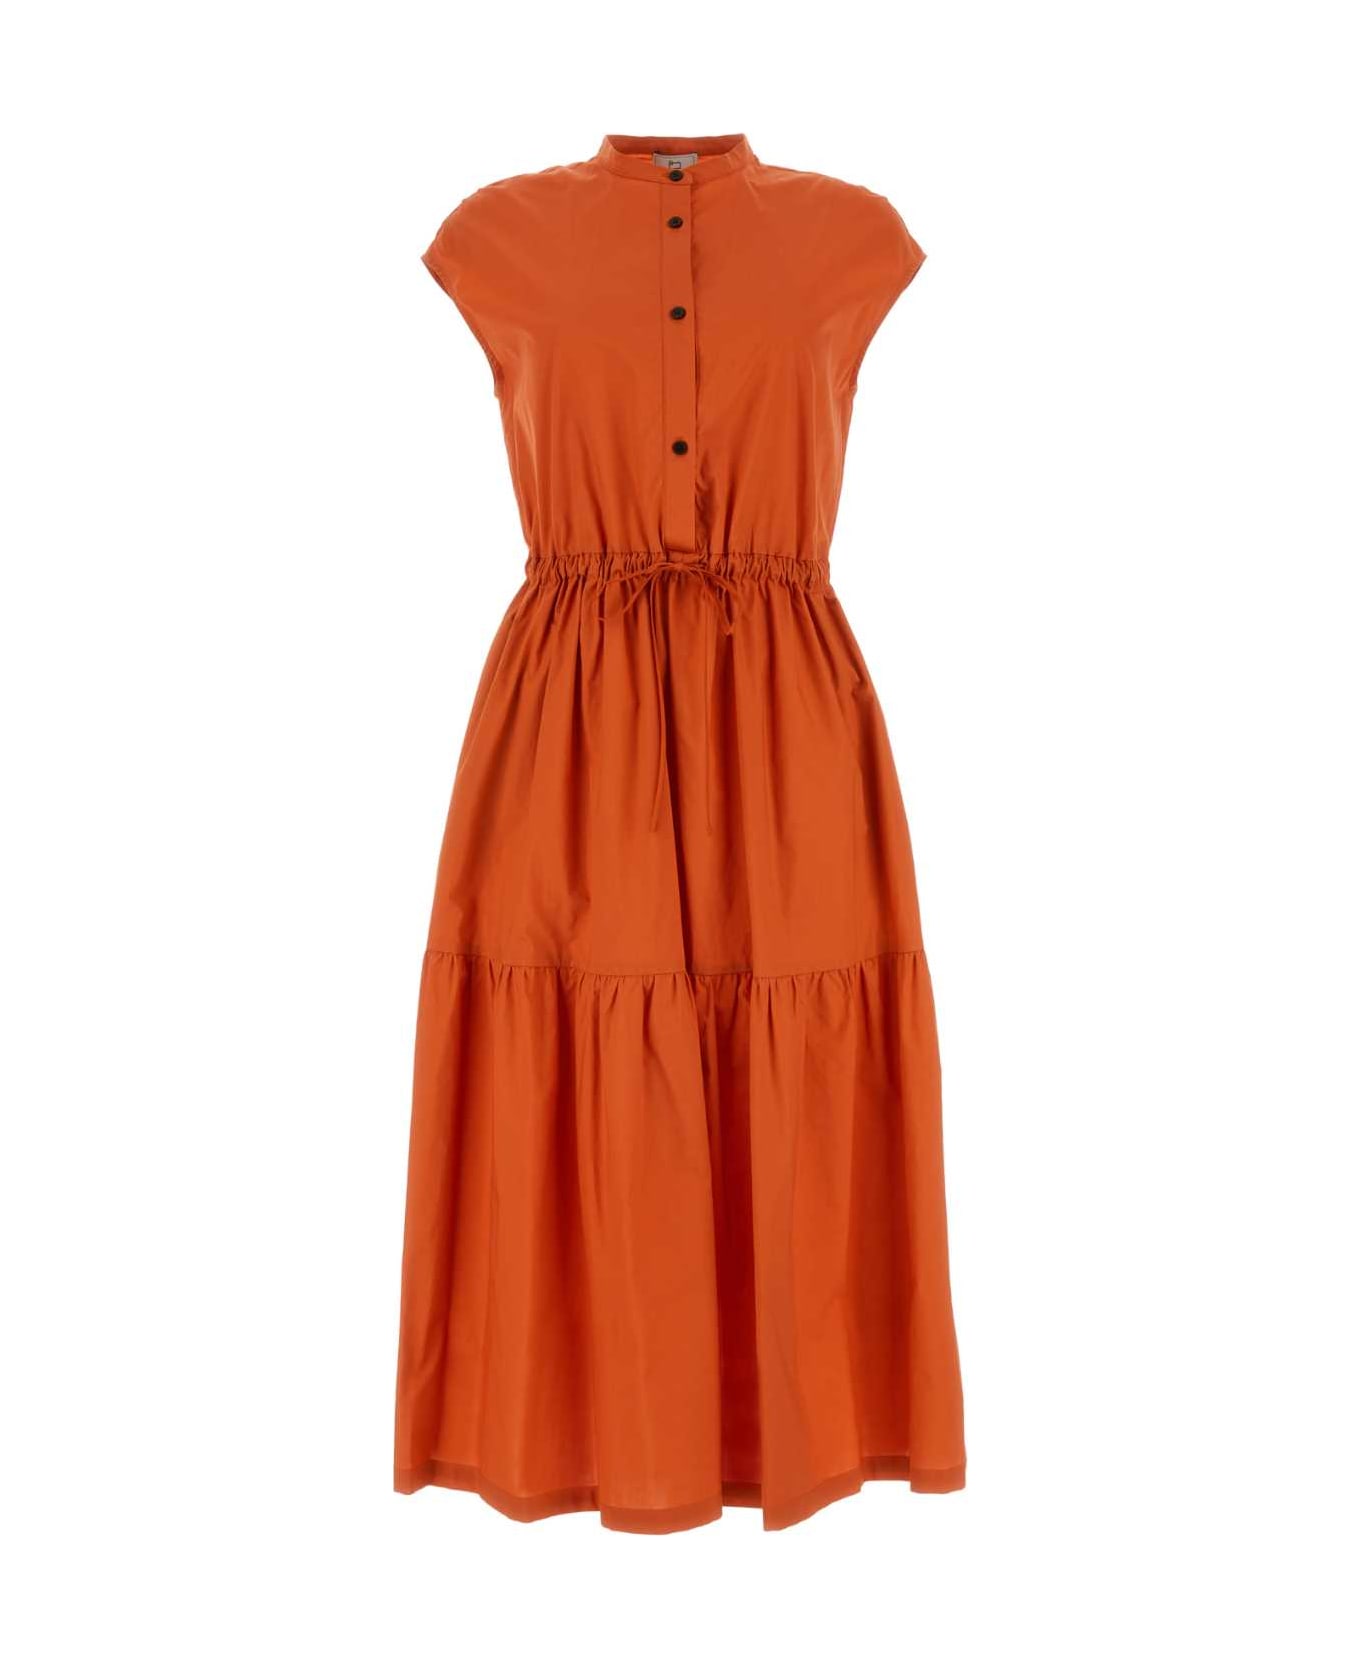 Woolrich Orange Cotton Dress - KOI